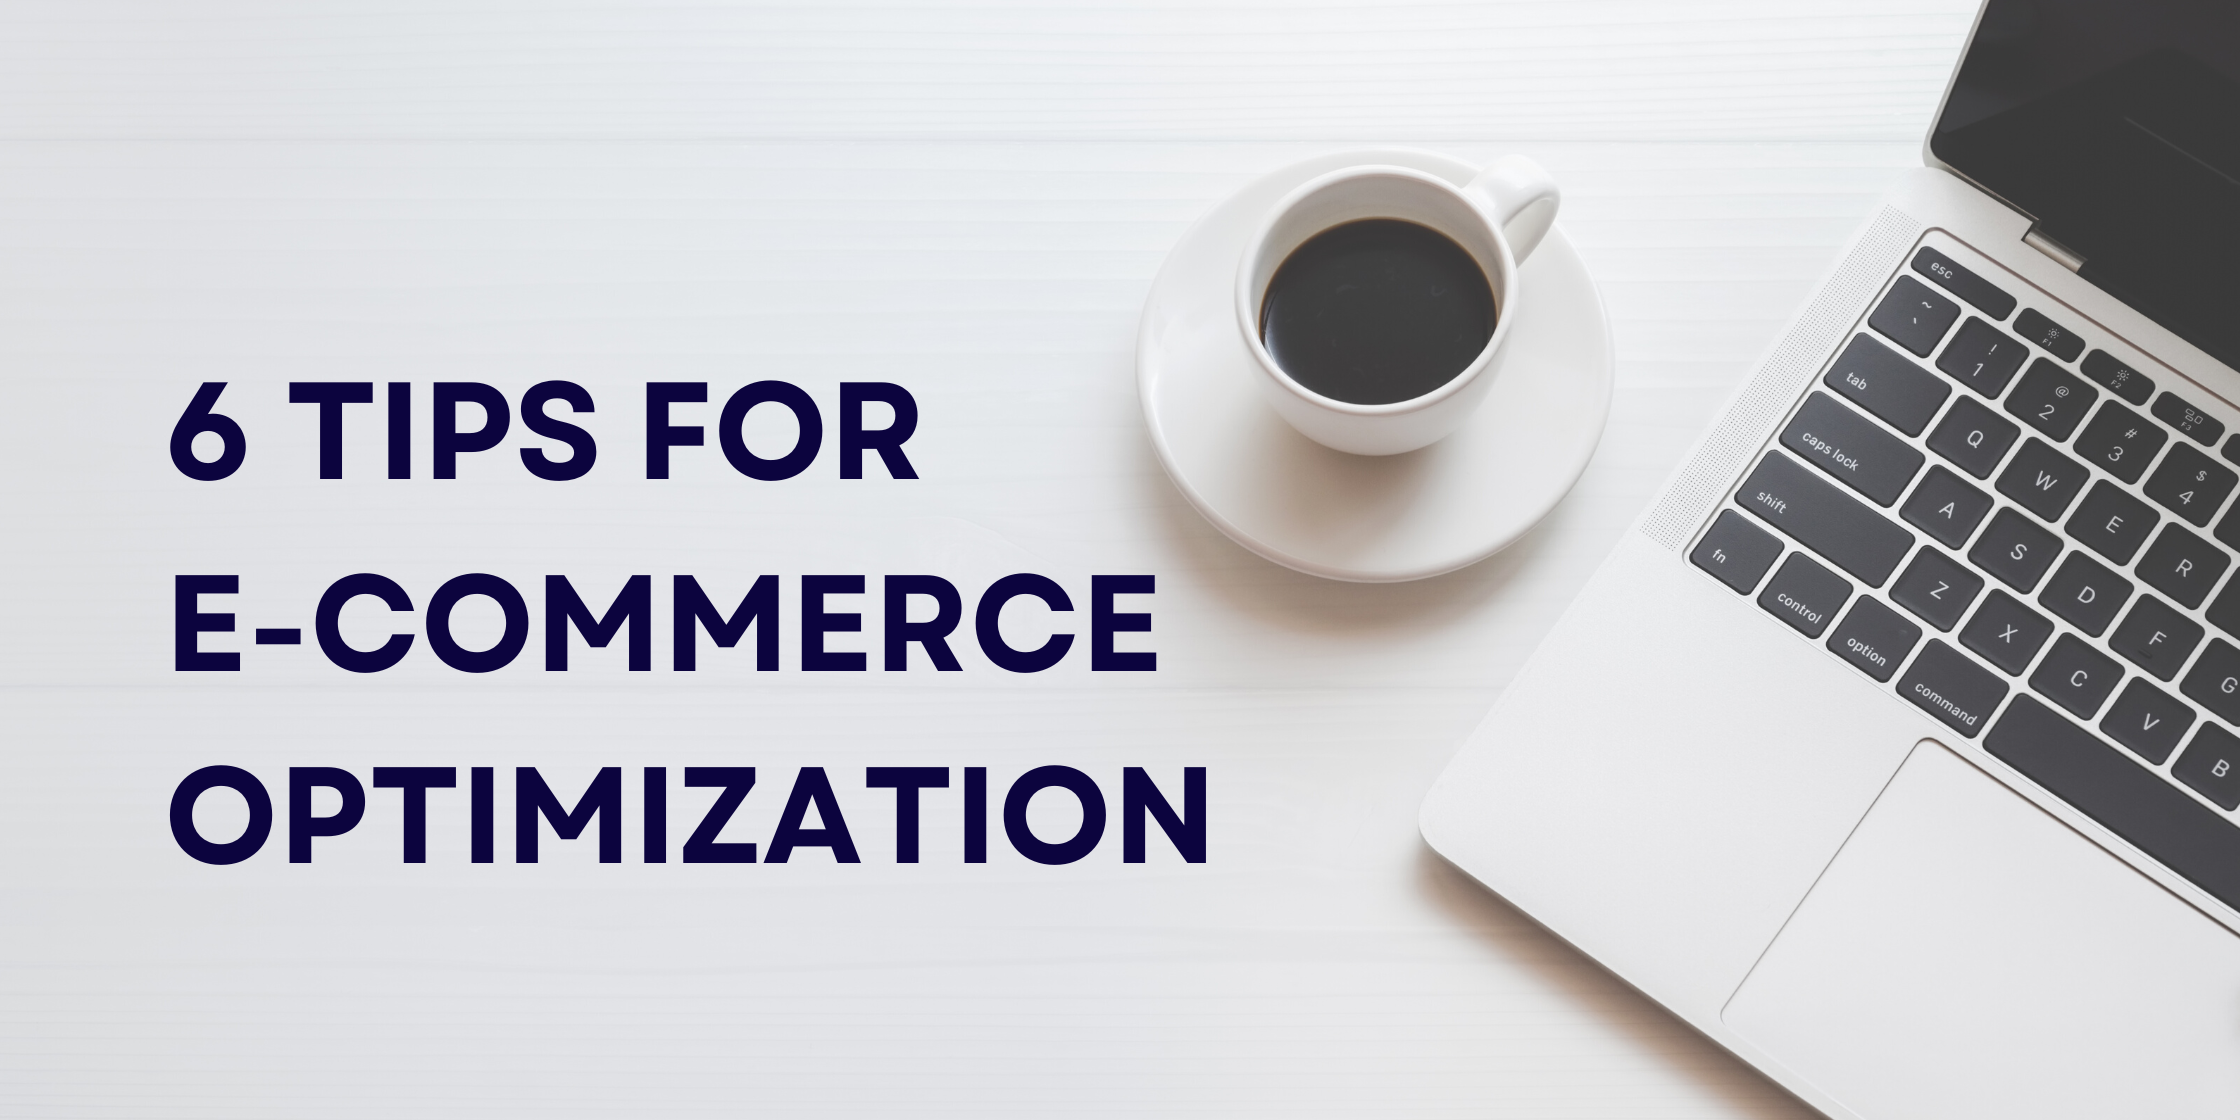 6 tips for e-commerce optimization